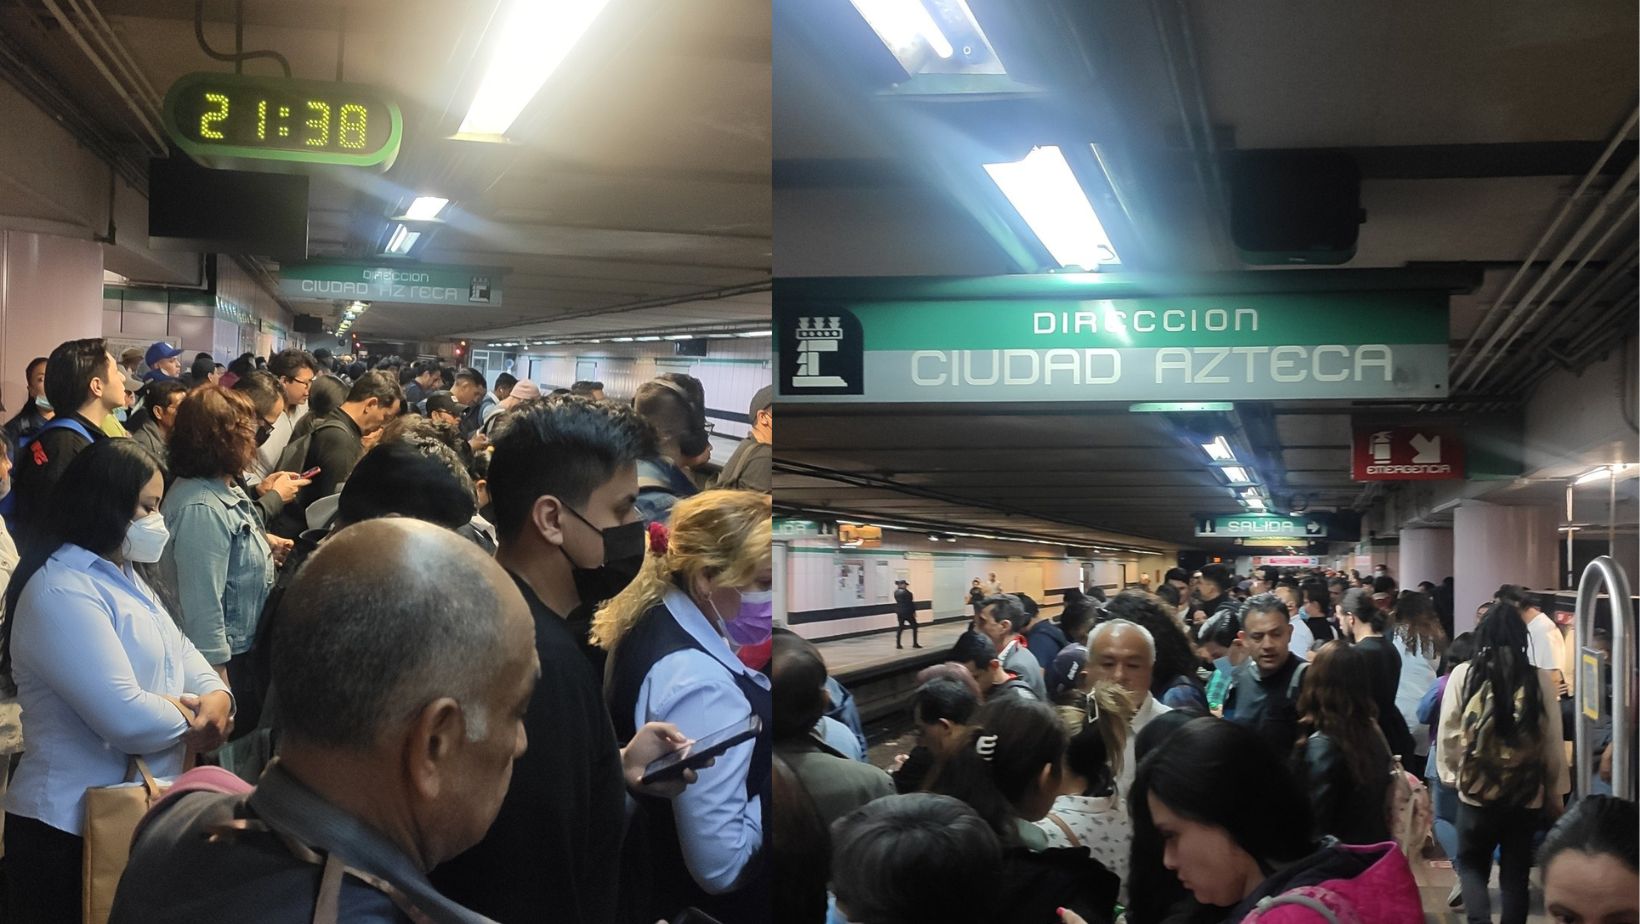 Usuarios del metro reportaron tiempos de espera muy largos en la Línea B del metro.
(@g_kmara)